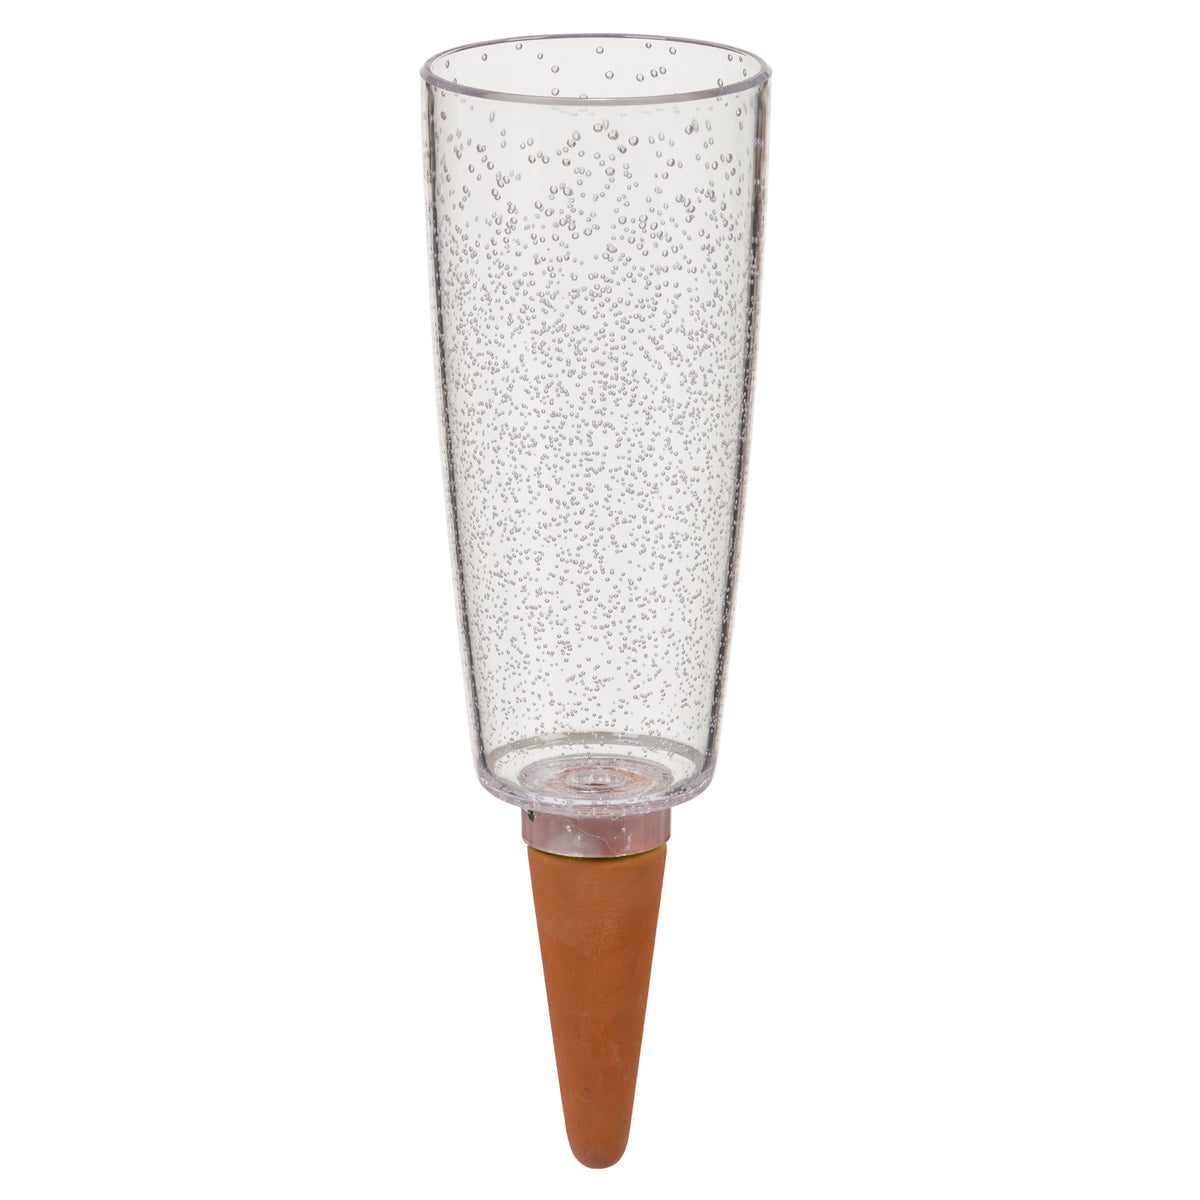 Scheurich Copa XXL, Wasserspeicher aus Kunststoff,  Farbe: Copa XXL, Transparent/Clear, 9,6 cm Durchmesser, 32 cm hoch, 1 l Vol.